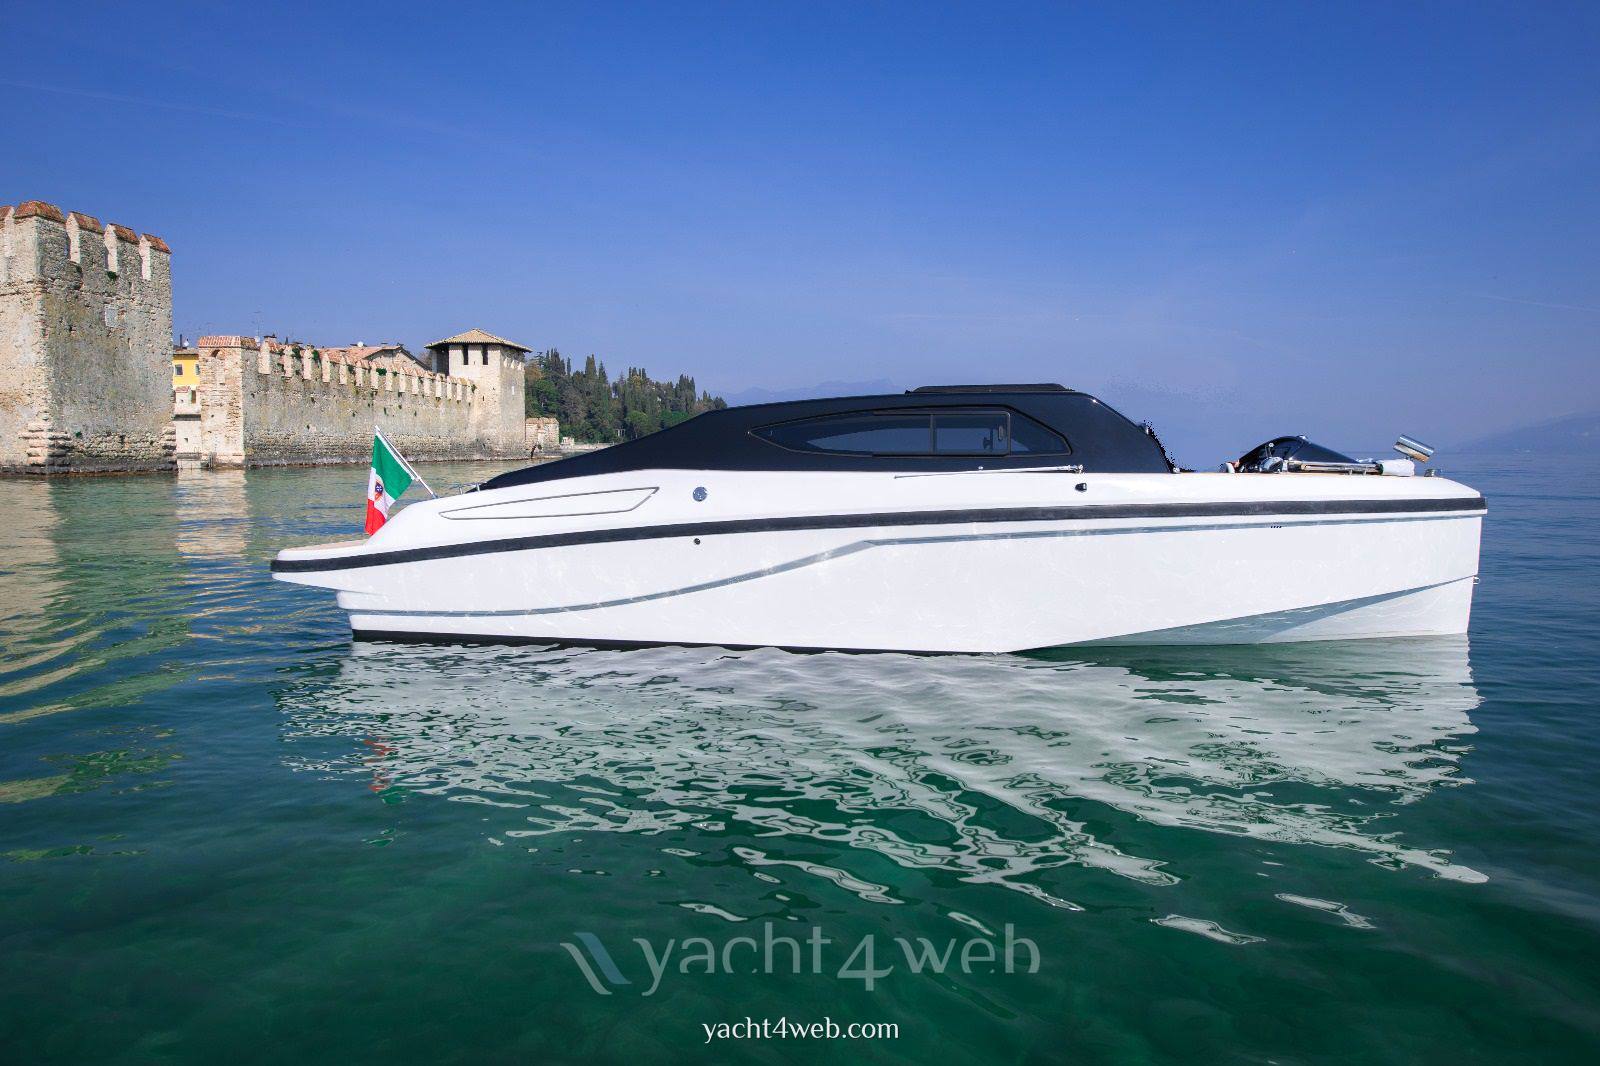 Ecoline Marine srl Eco 850 hybrid (limousine) Motor boat used for sale